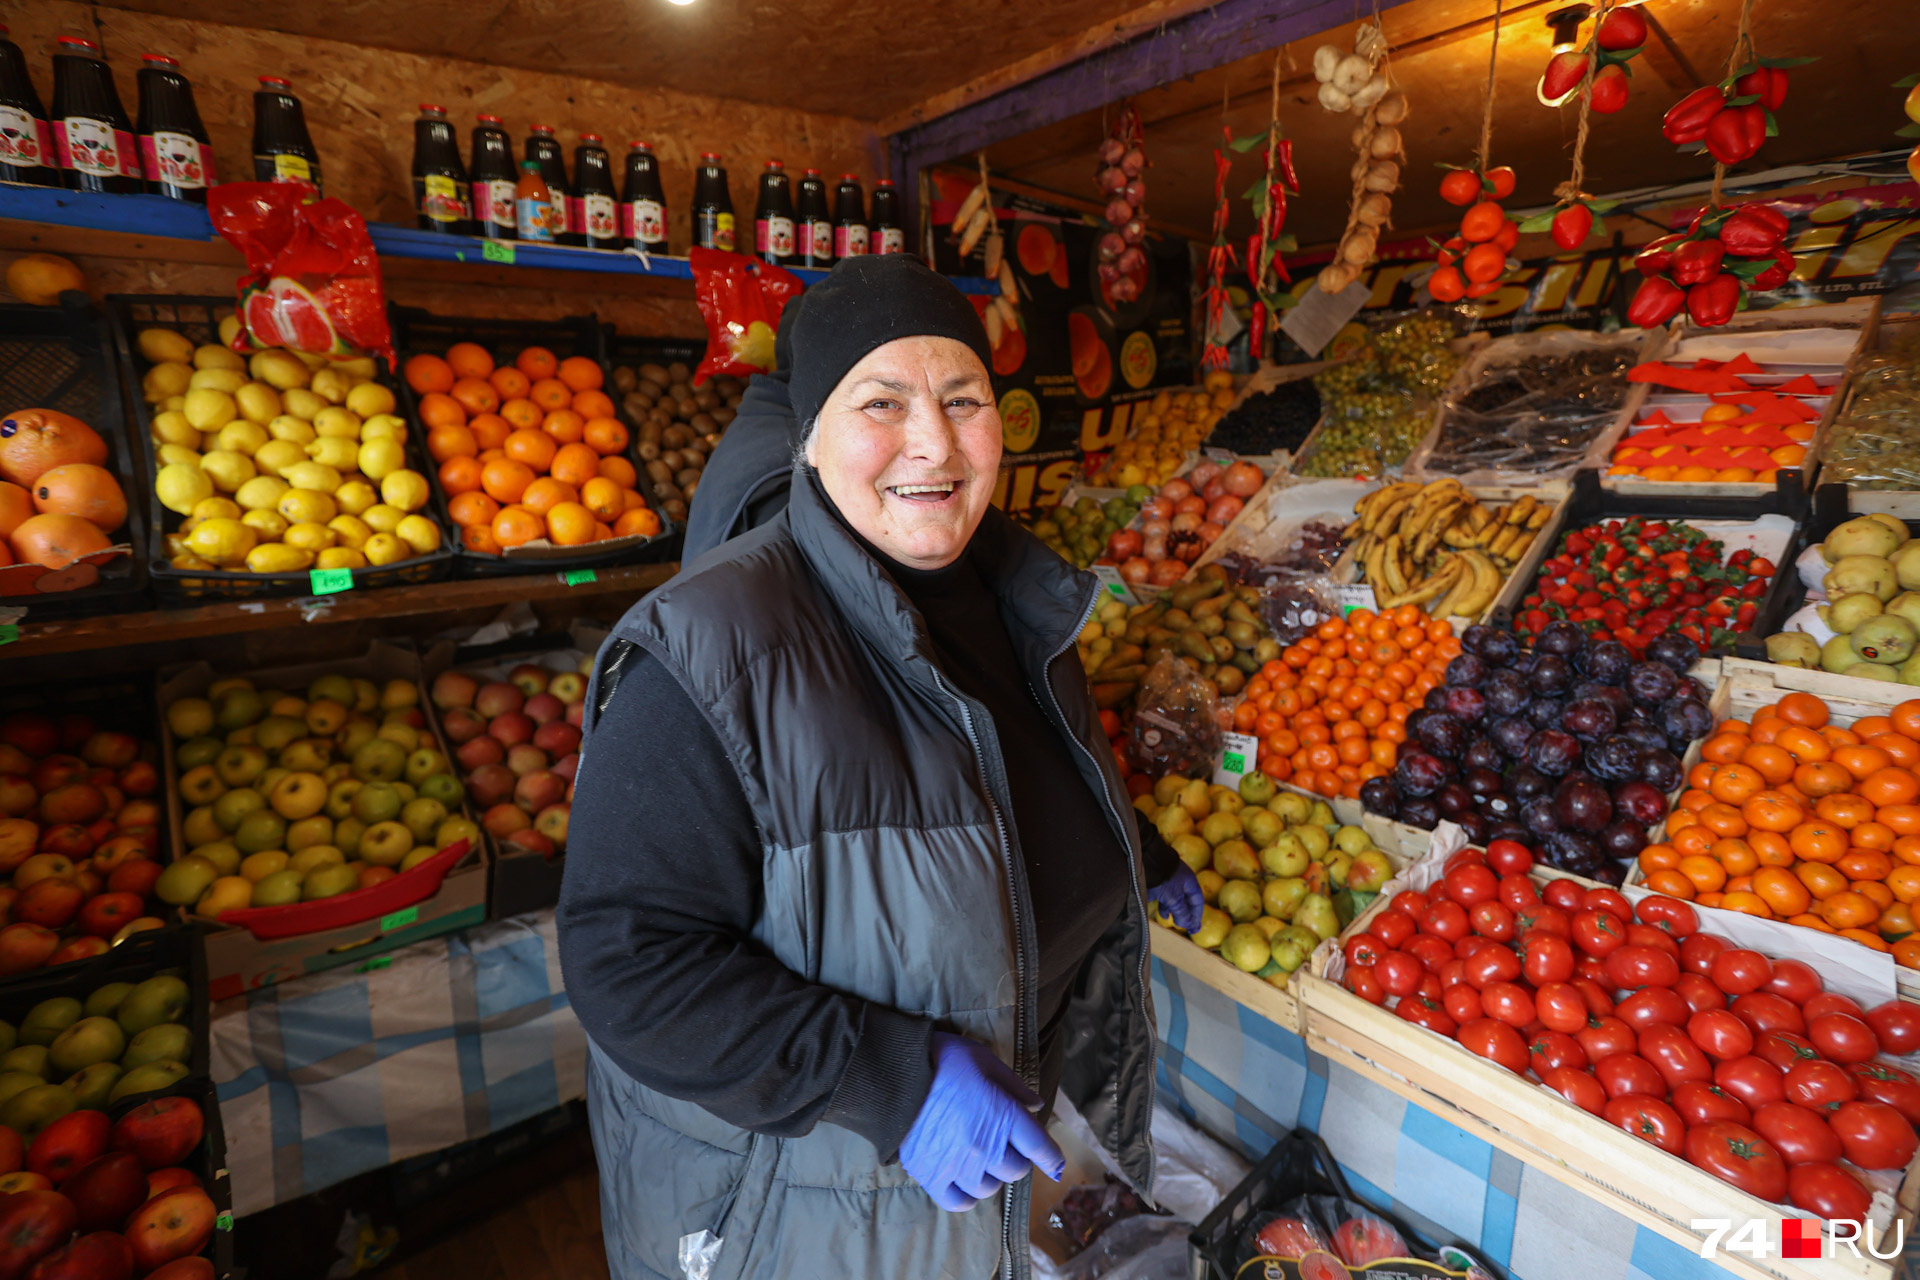 Хозяйка одного из таких киосков — Эльза. Она около 10 лет торгует овощами и фруктами, пока никаких угроз для своего бизнеса не видит